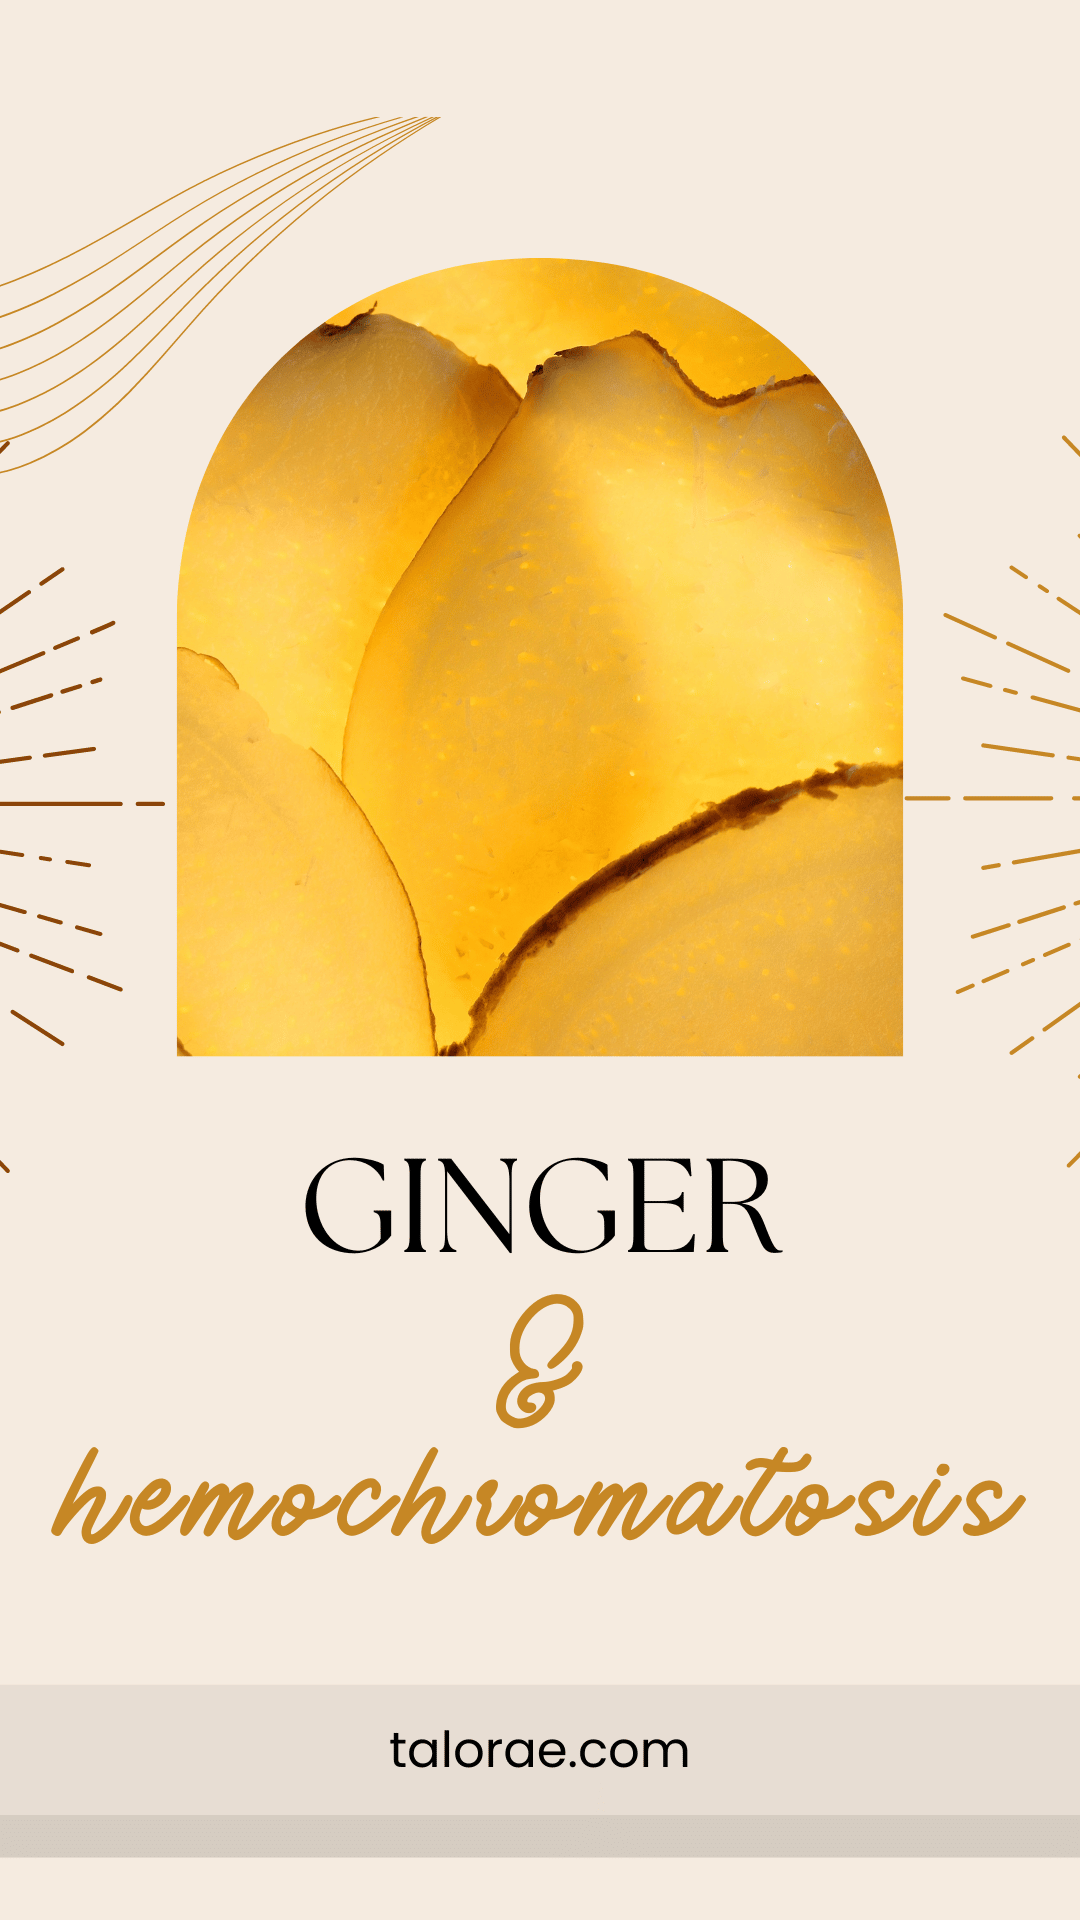 ginger for hemochromatosis pinterest pin